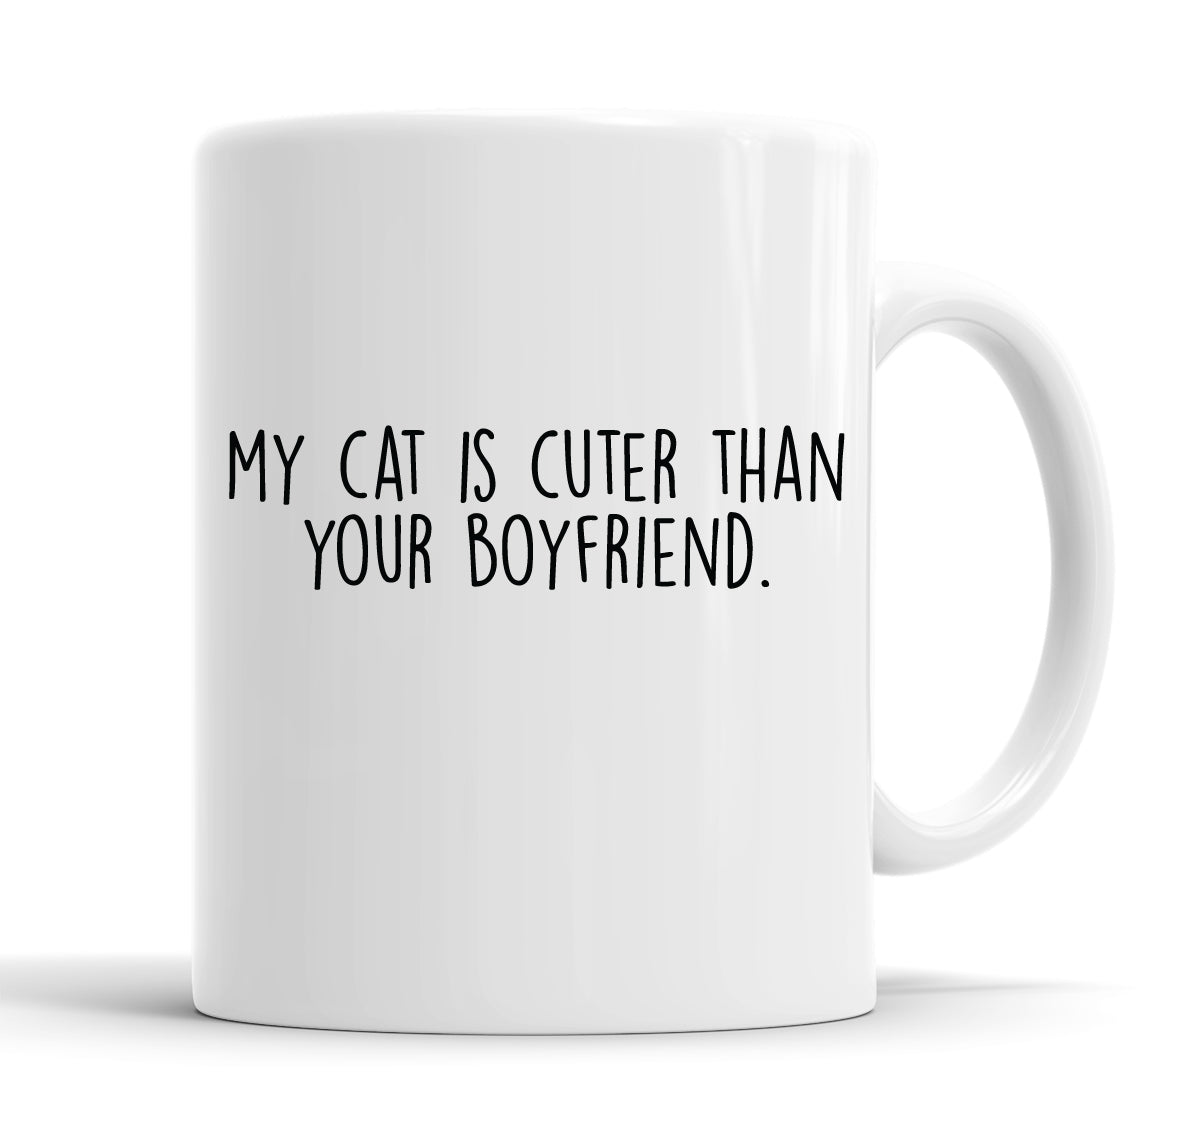 My Cat Is Cuter Than Your Boyfriend Funny Slogan Mug Tea Cup Coffee